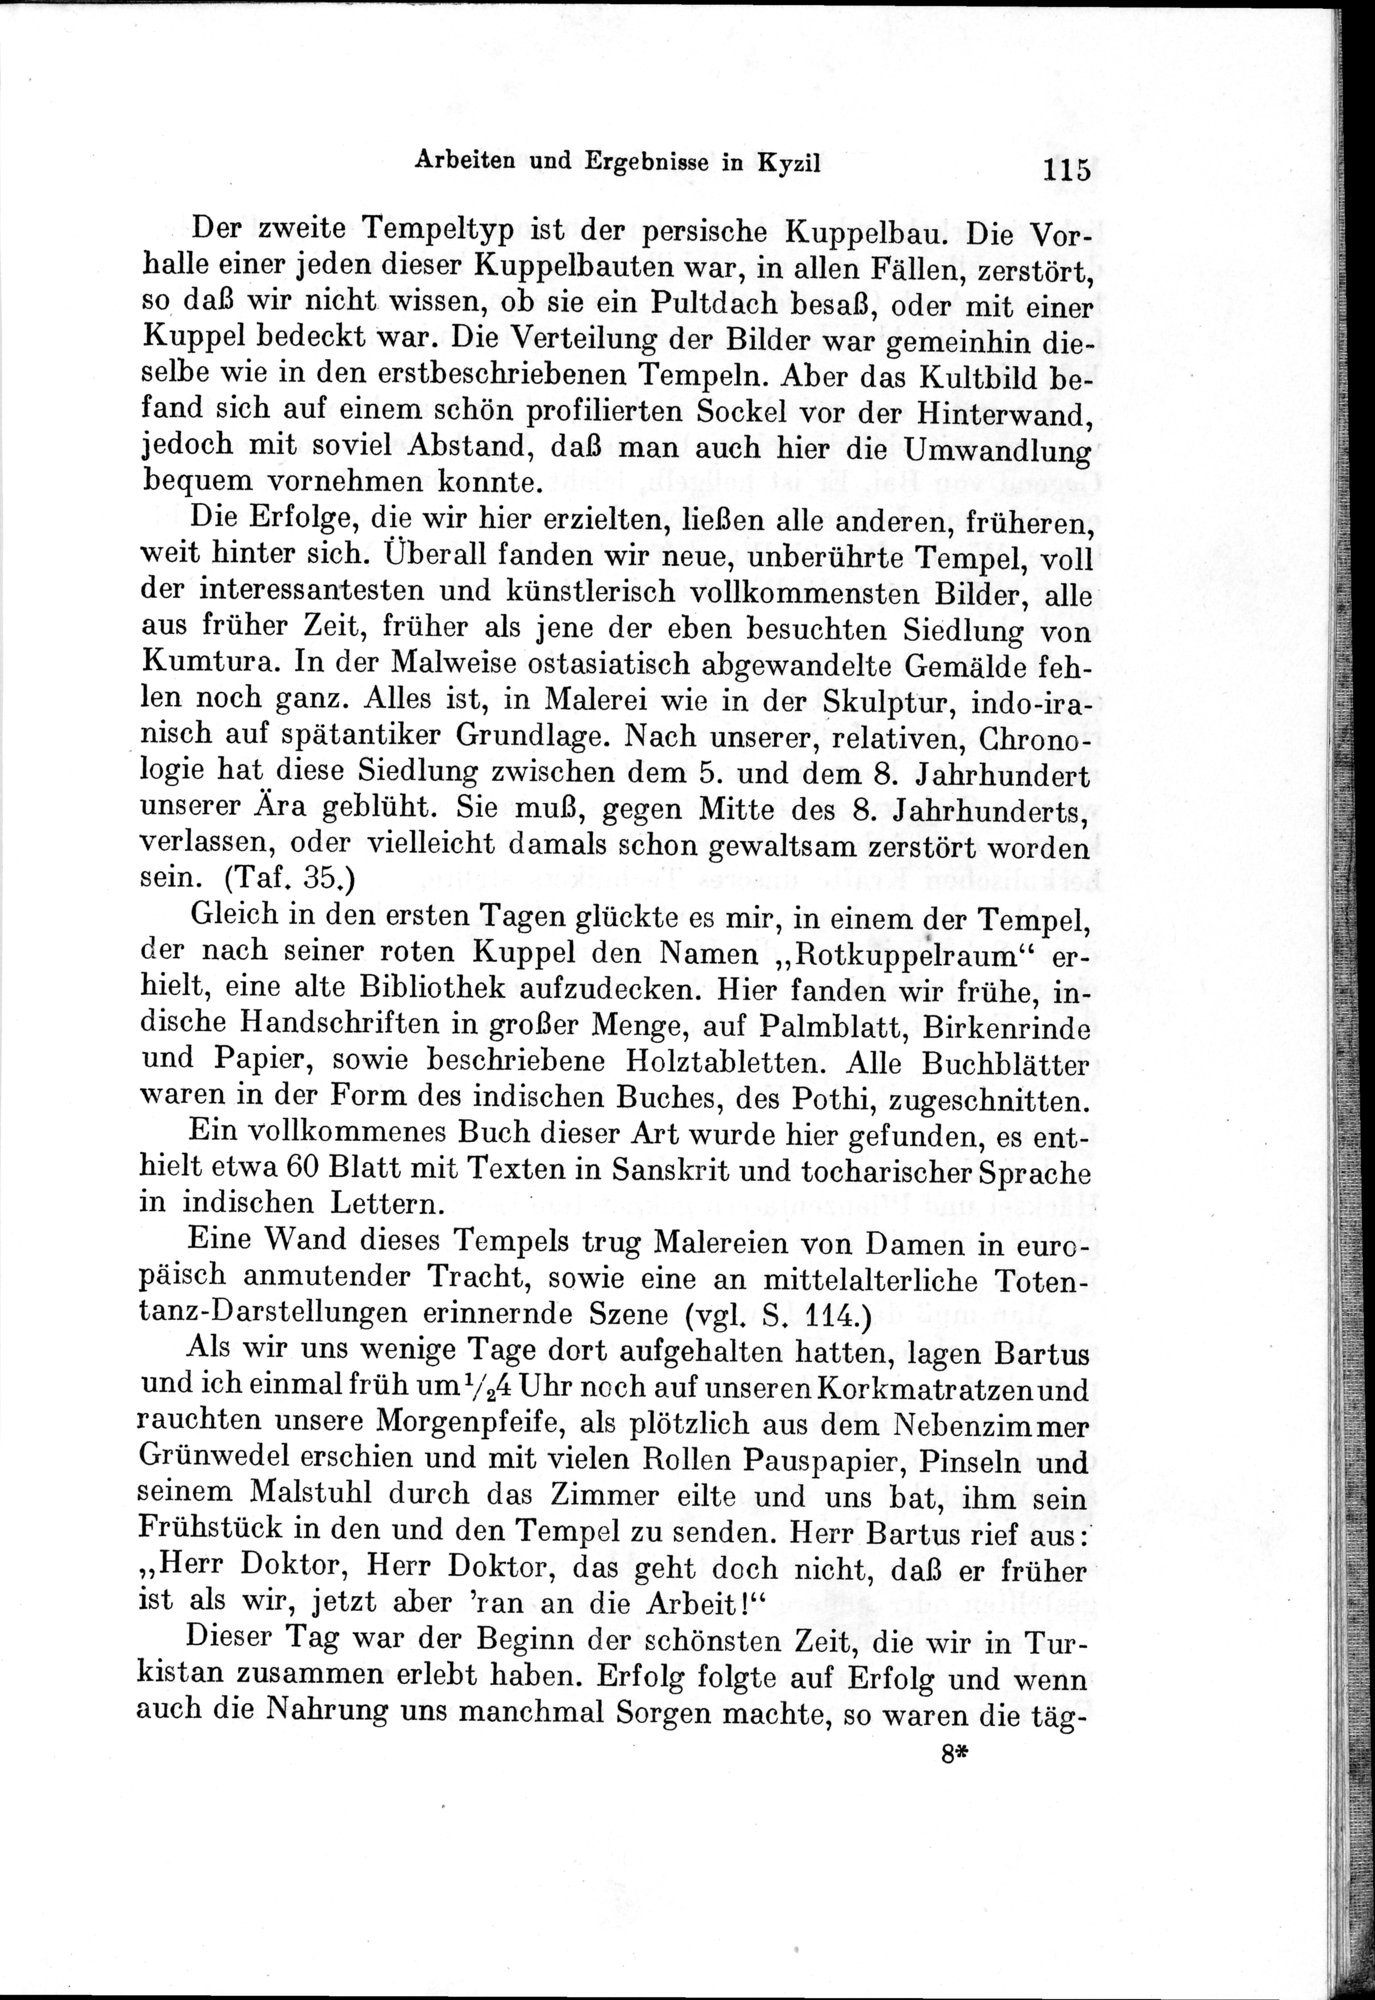 Auf Hellas Spuren in Ostturkistan : vol.1 / Page 167 (Grayscale High Resolution Image)